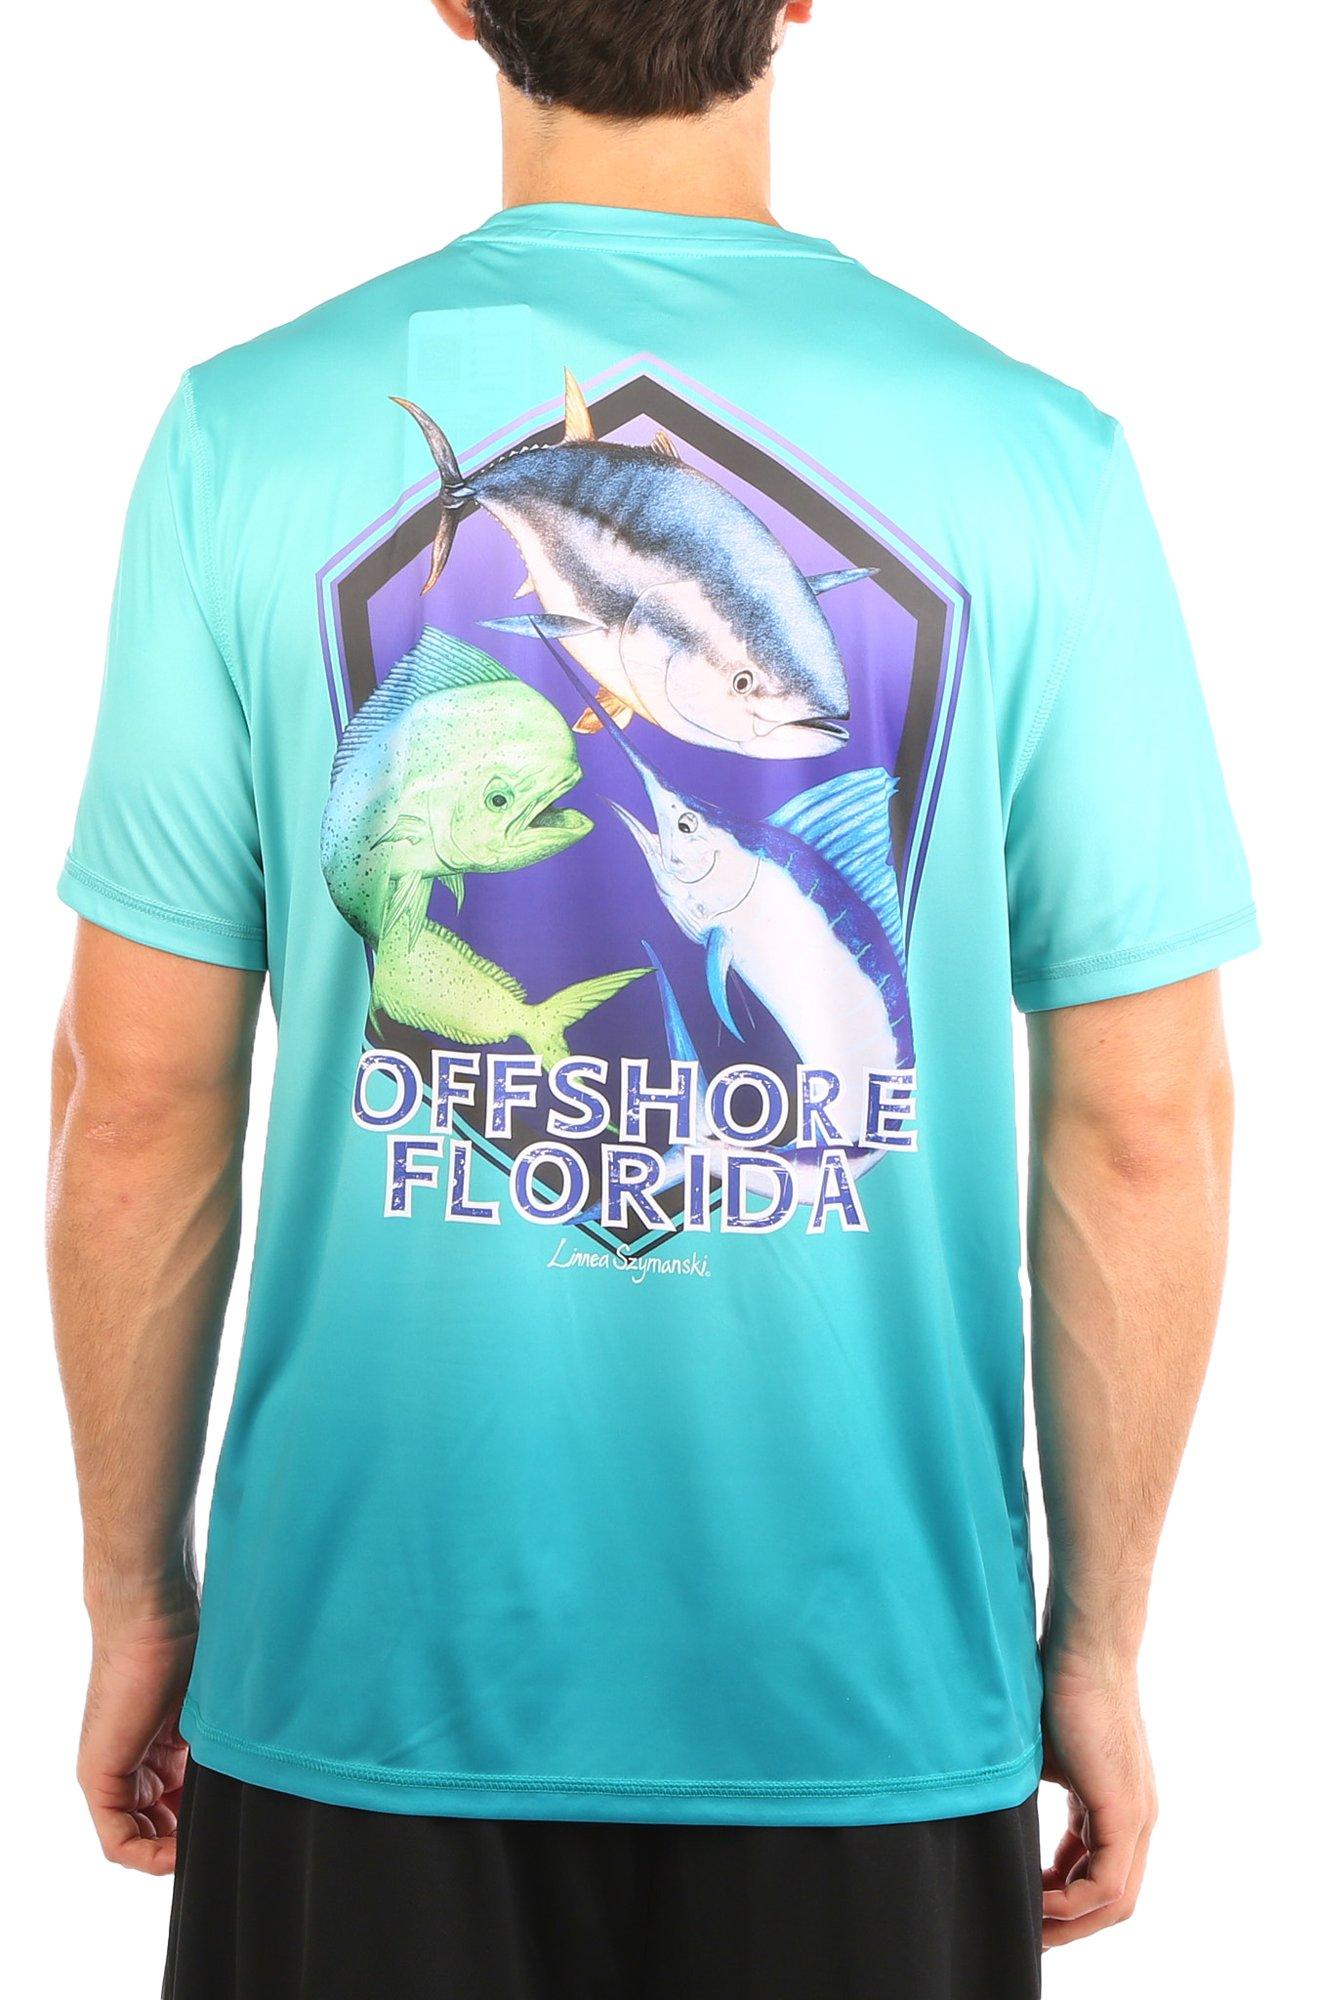 Mens Reel-Tec Offshore Florida Graphic T-Shirt